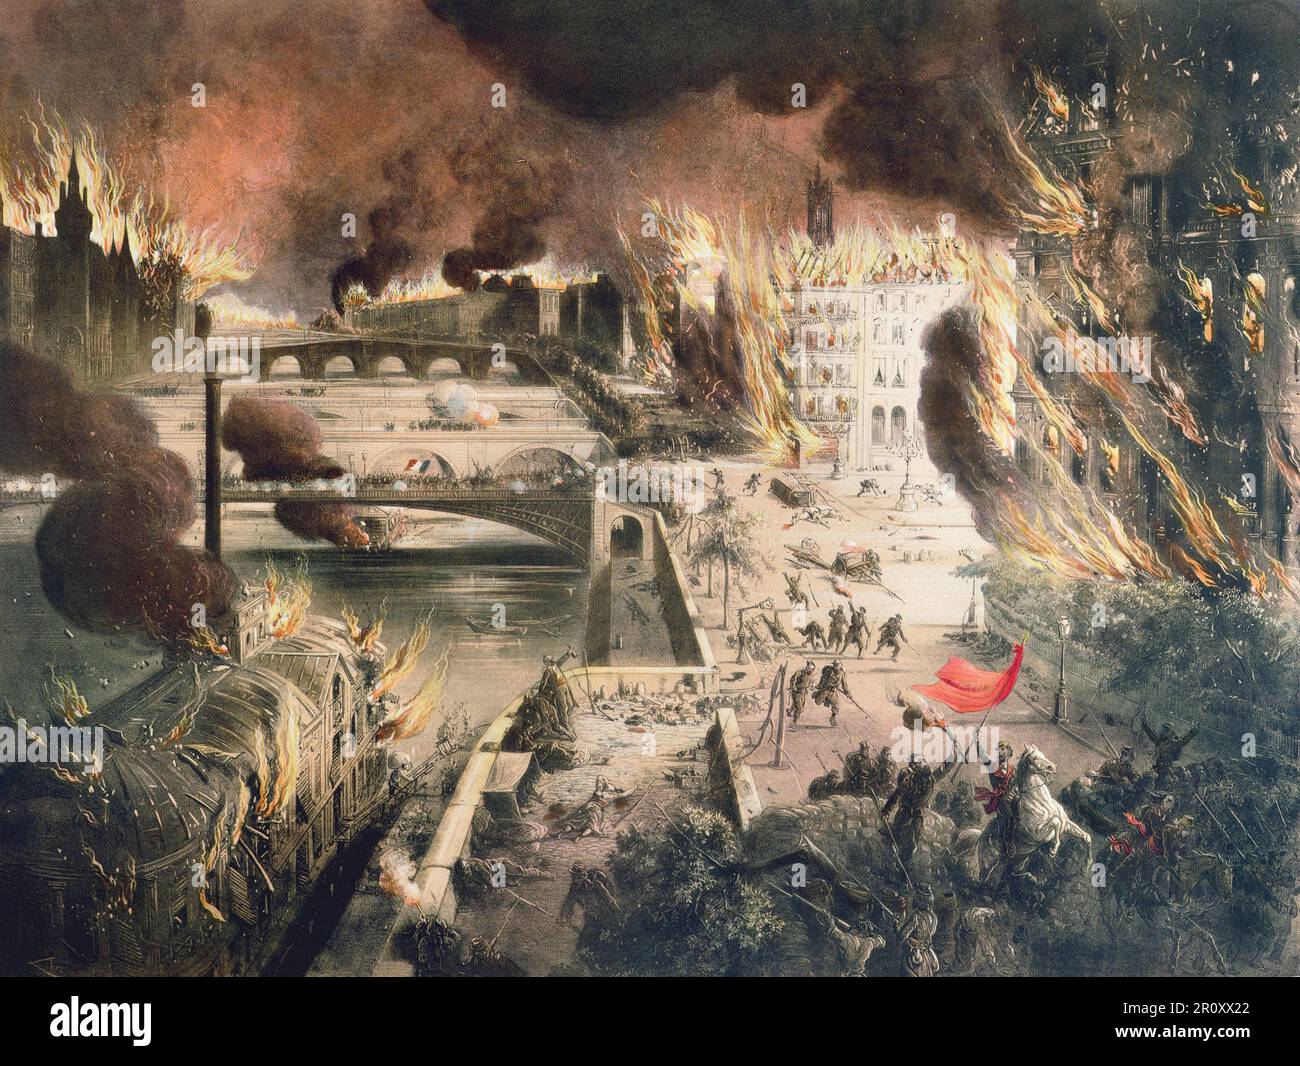 Incendie de Paris pendant la commune - l'incendie de Paris dans la nuit du 24 au 25 mai 1871 Foto Stock